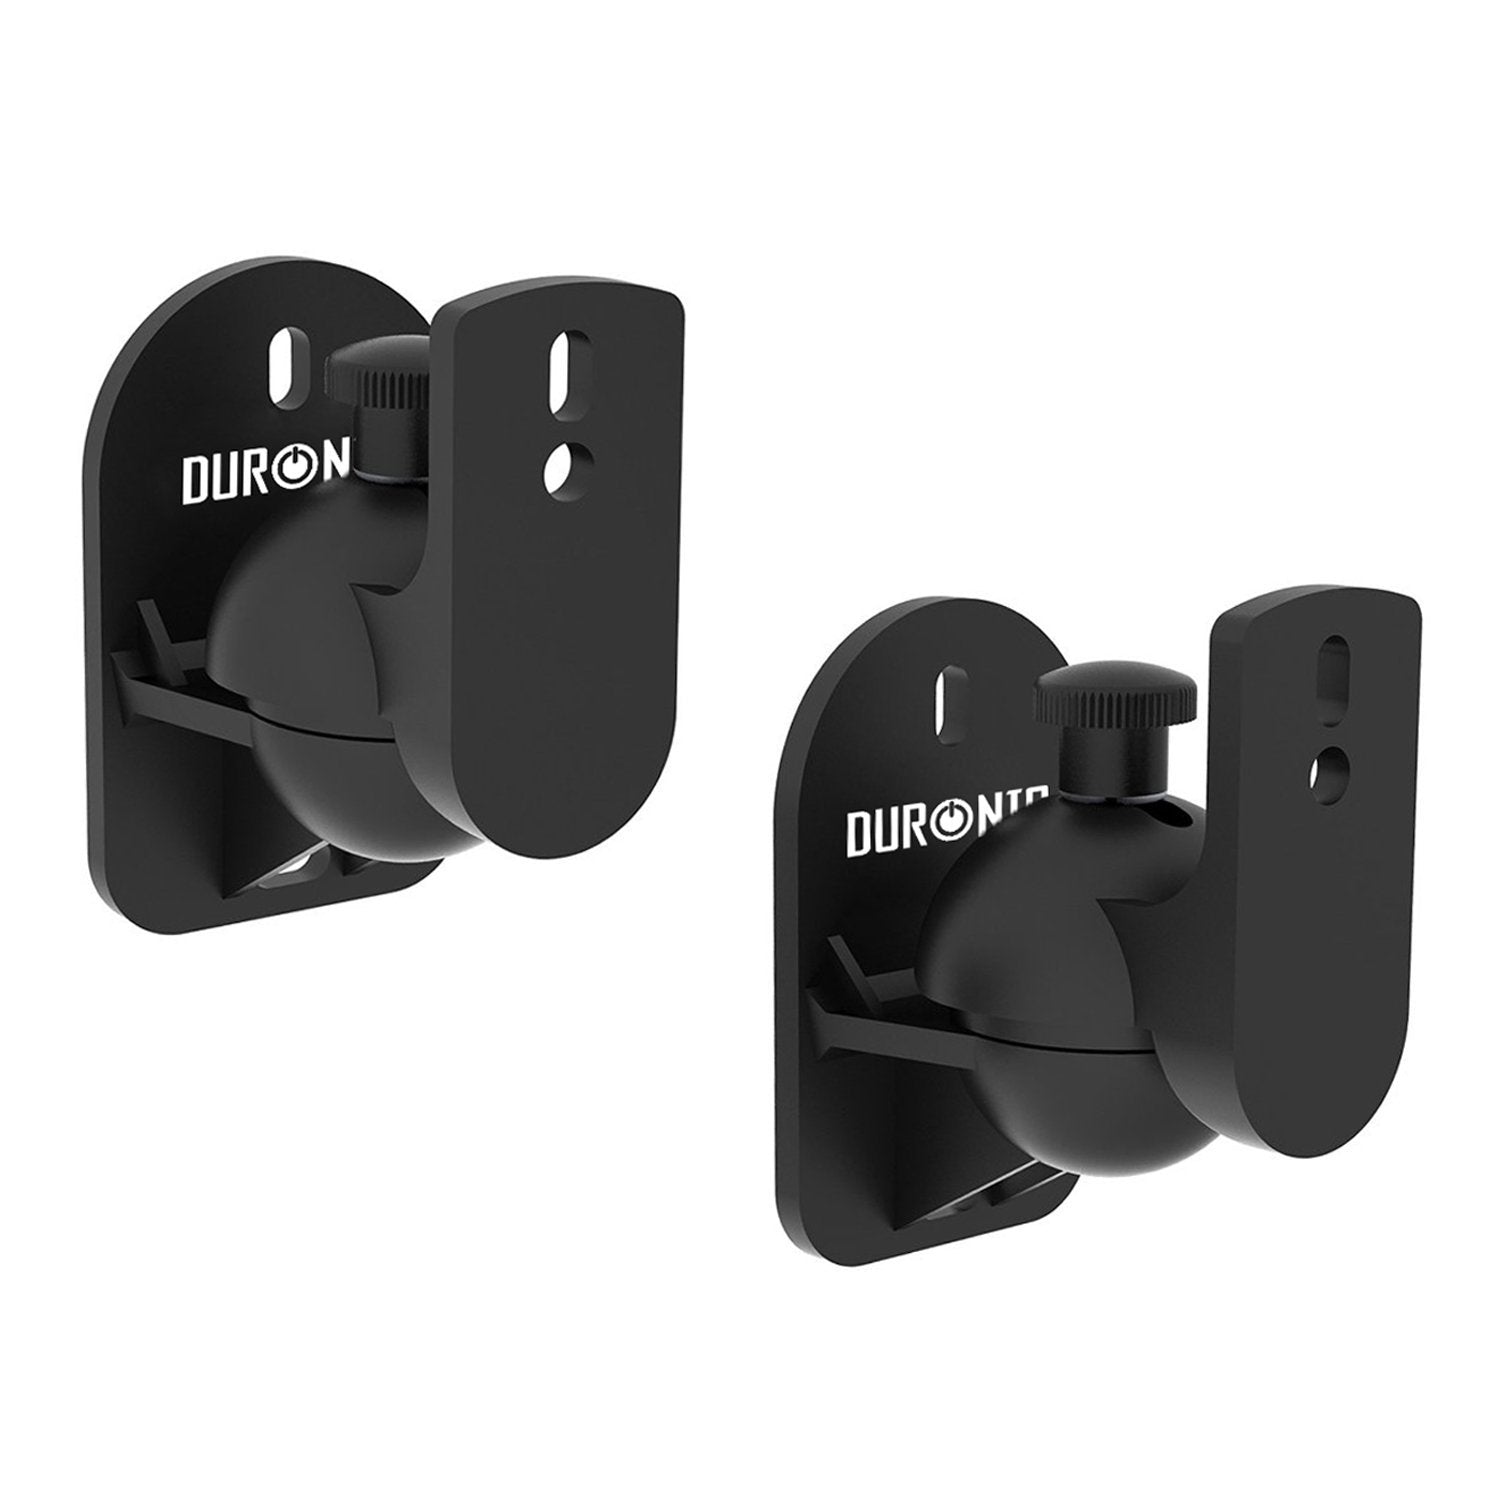 Duronic SPS1010 set of 2 universal wall speaker mount / brackets - 2 Year warranty